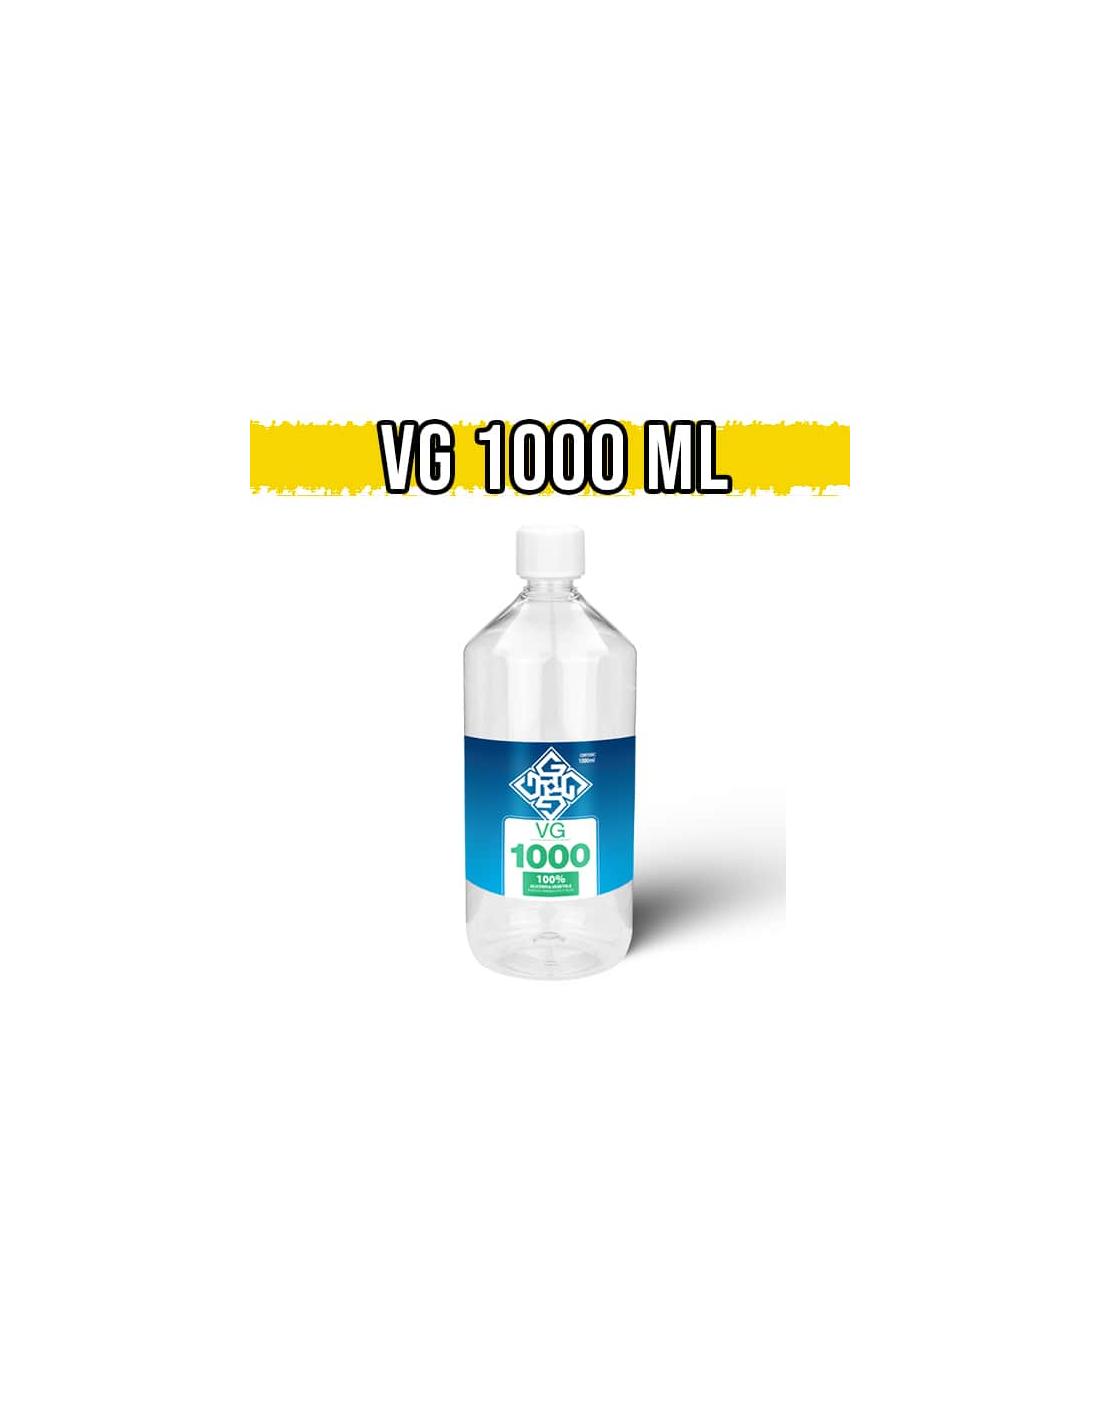 glowell glicerina vegetale 1 litro (1000ml) full vg